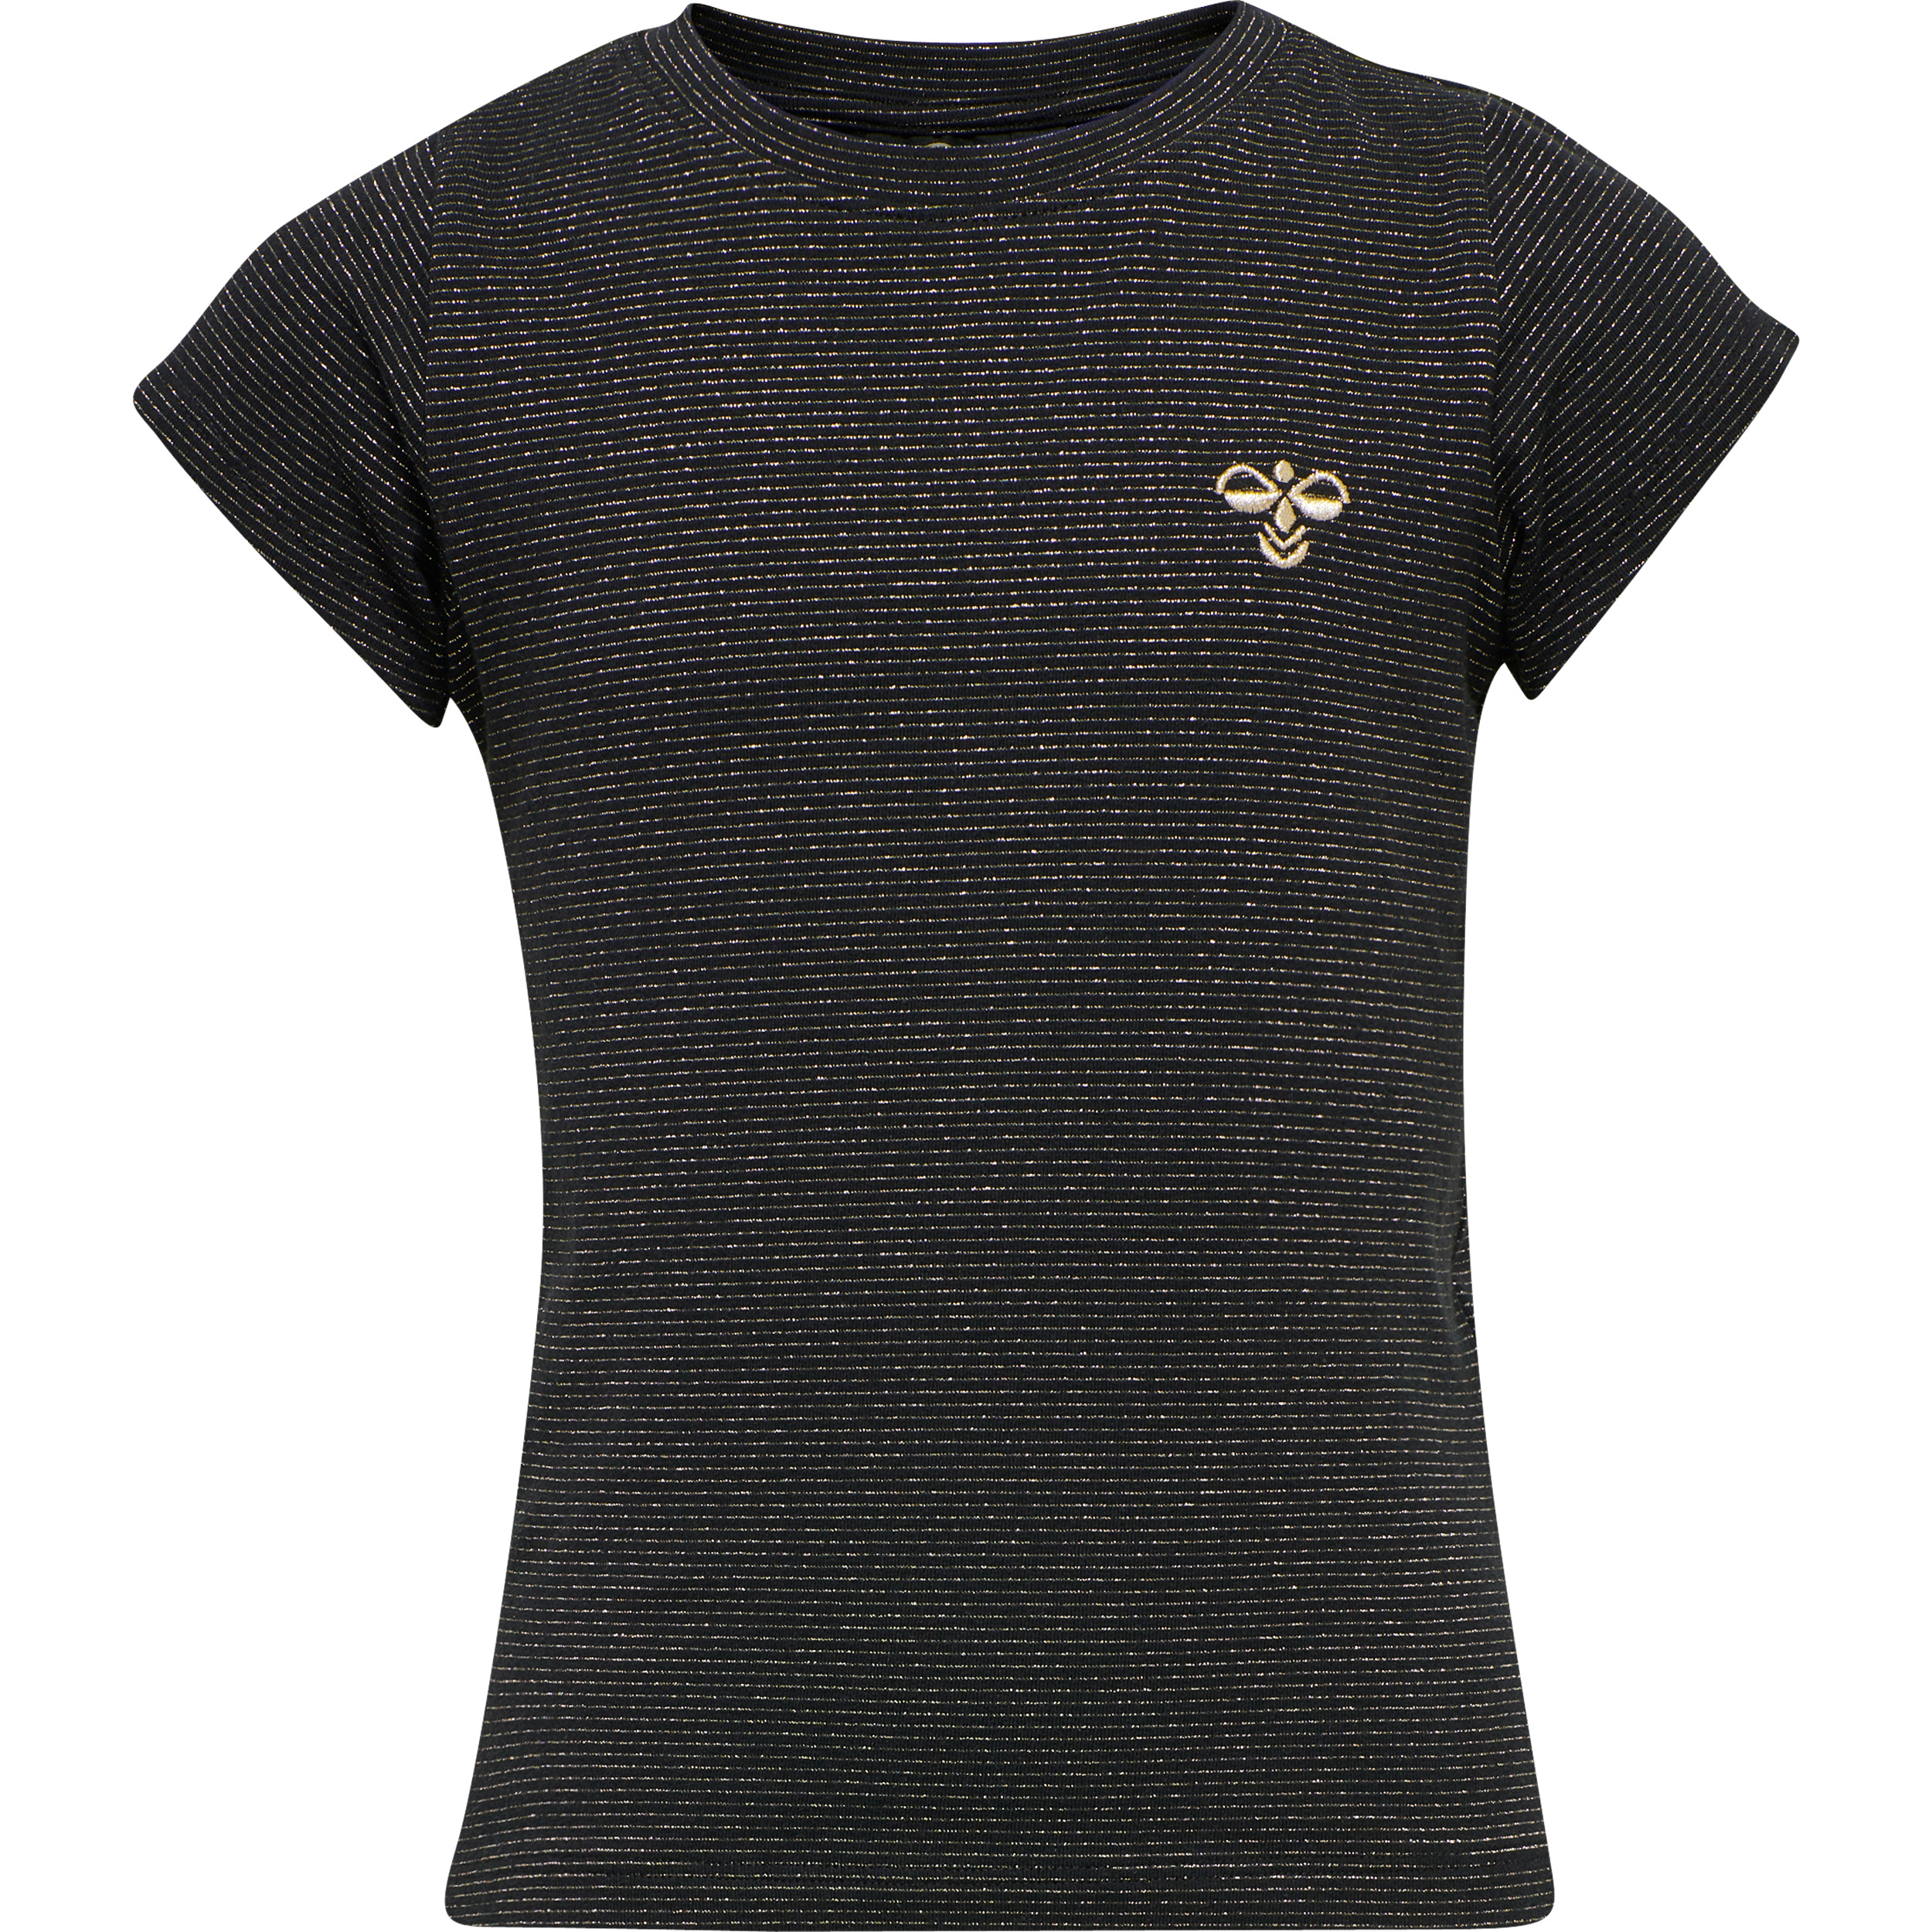  Ellen T-Shirt, Sort, 116 cm